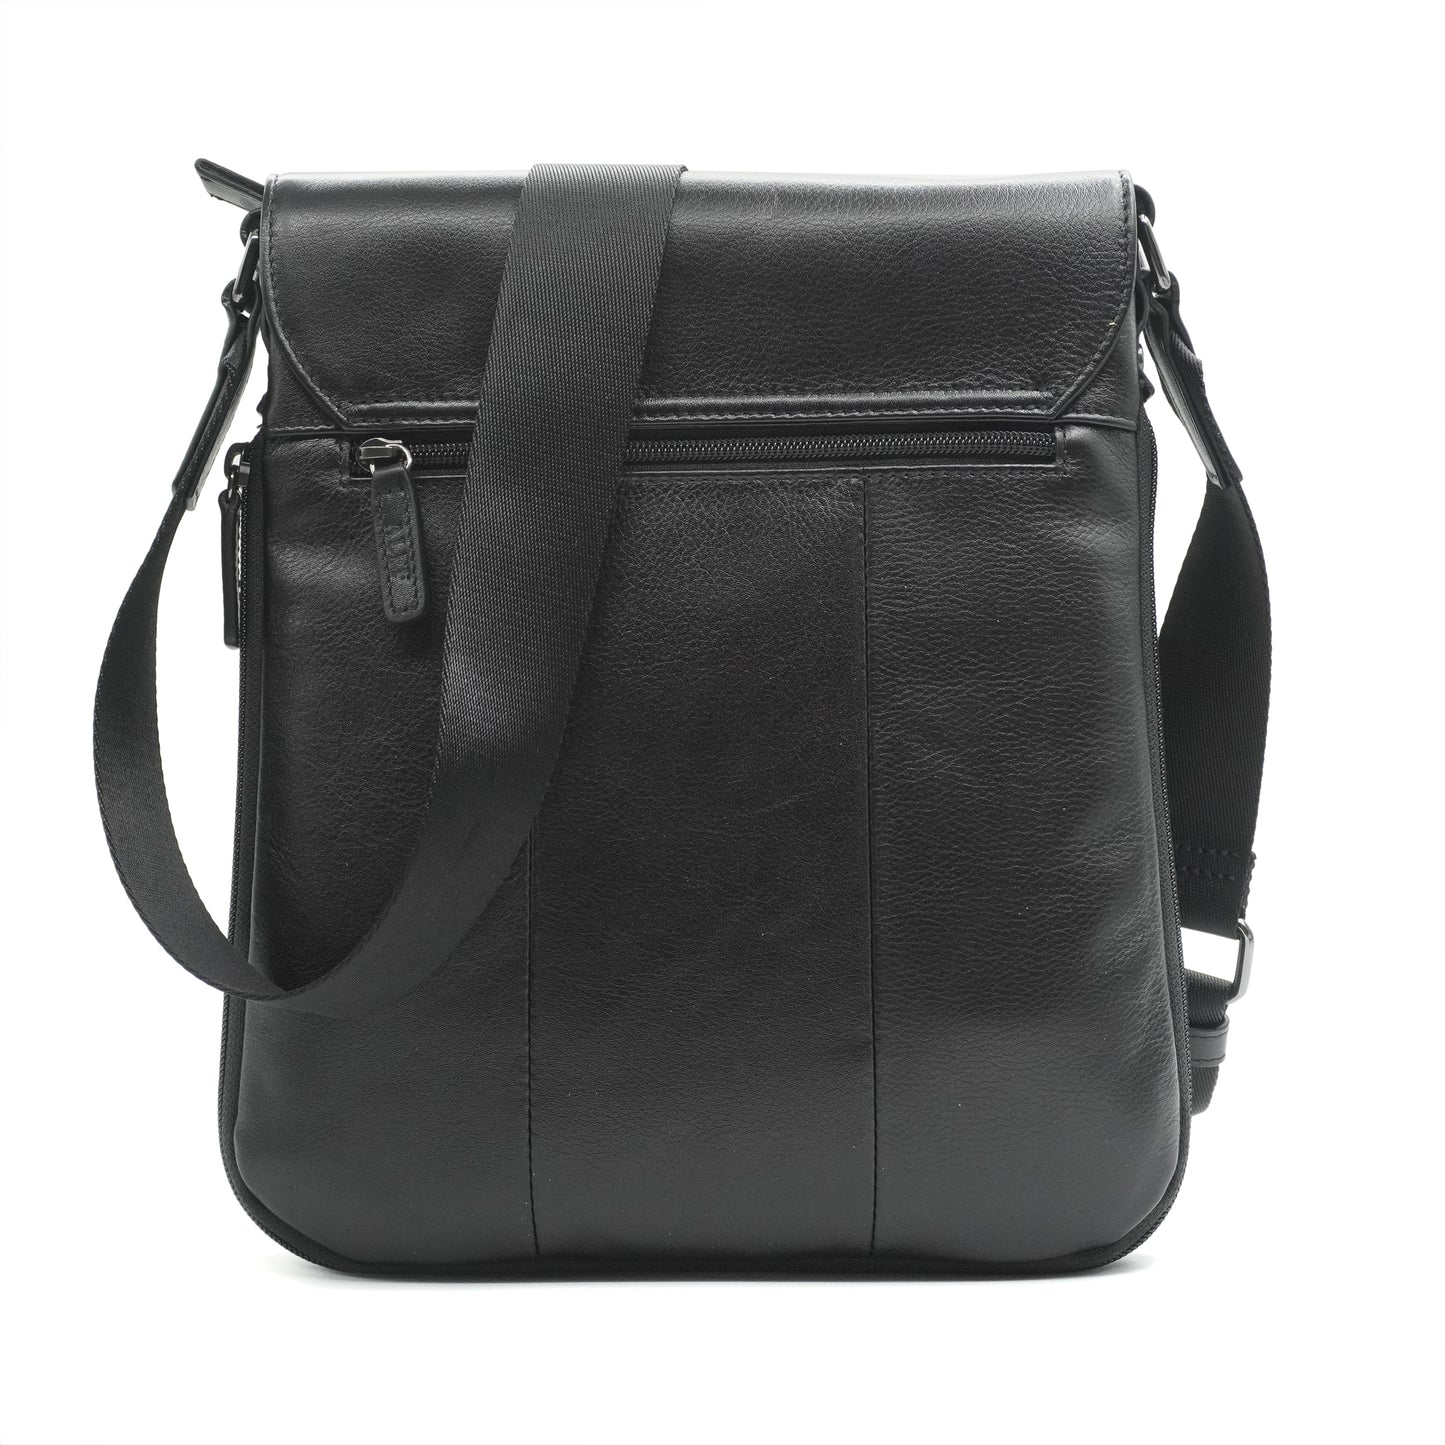 Alef Ridley Men's  Leather Shoulder Bag with Flap (Black)